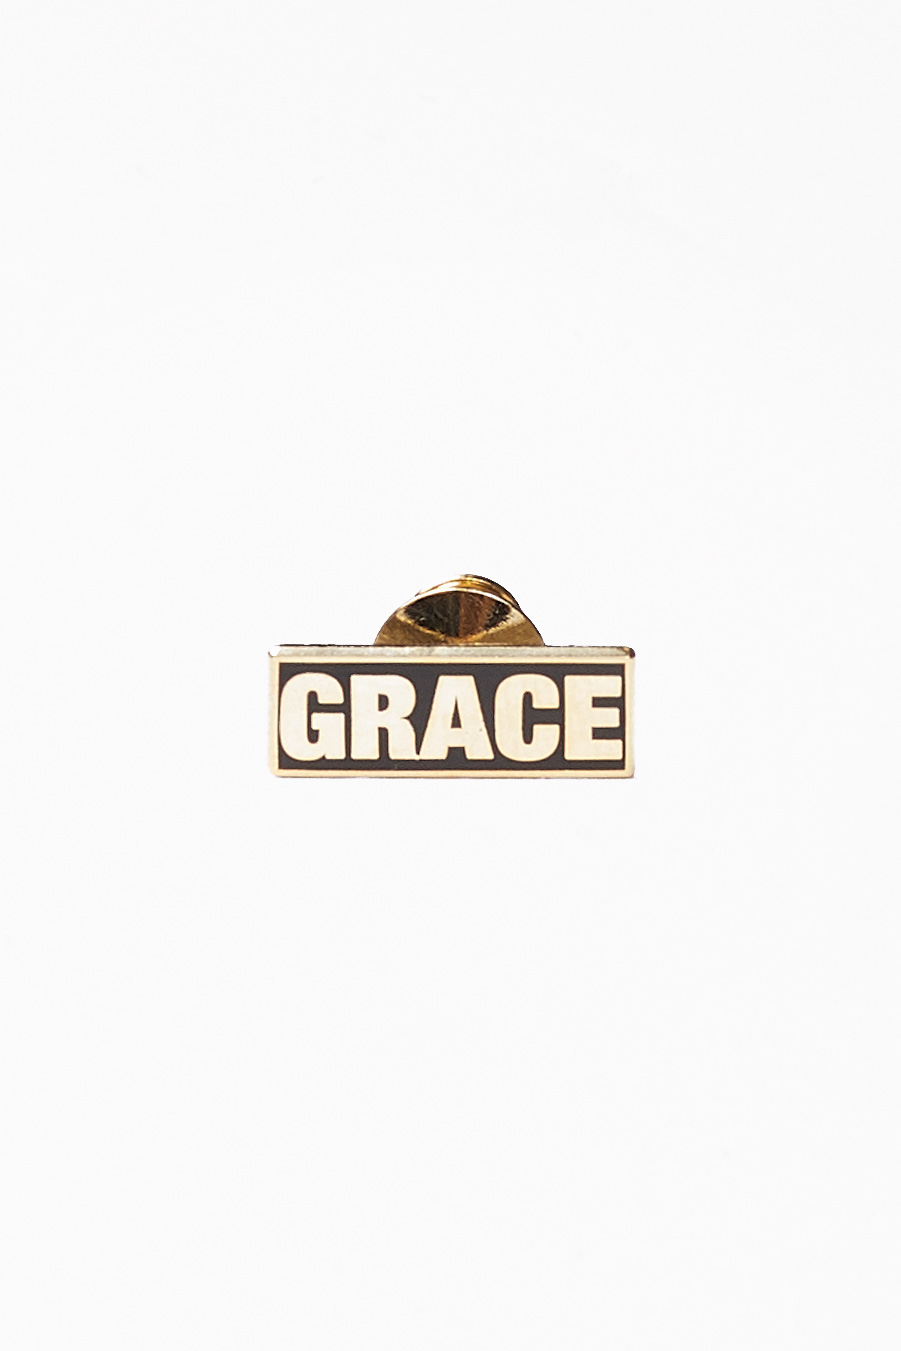 Grace_Hero.jpg